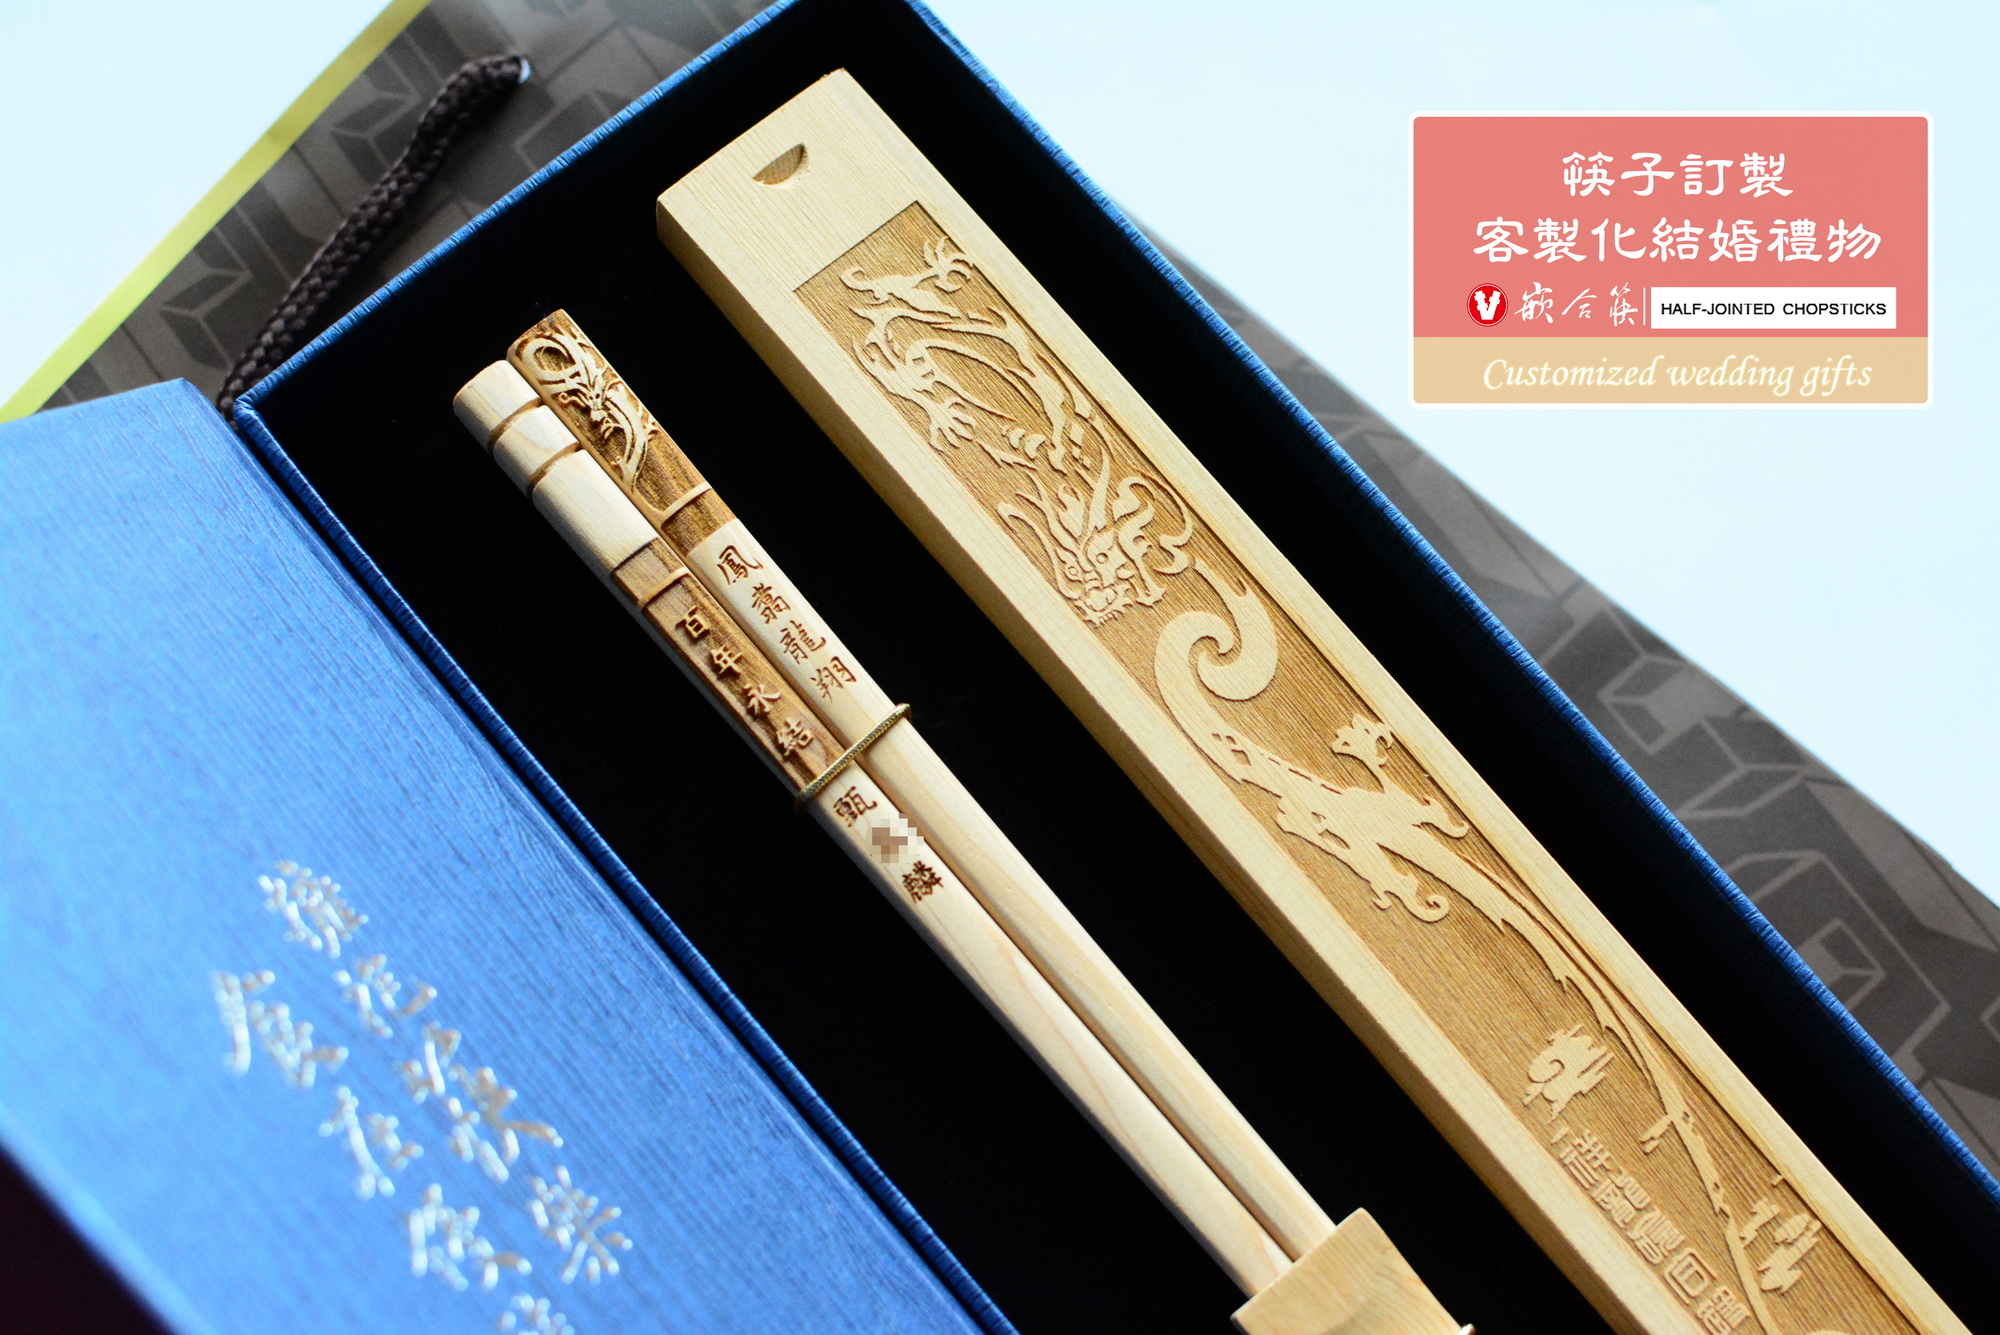  筷子訂製 客製化結婚禮物 